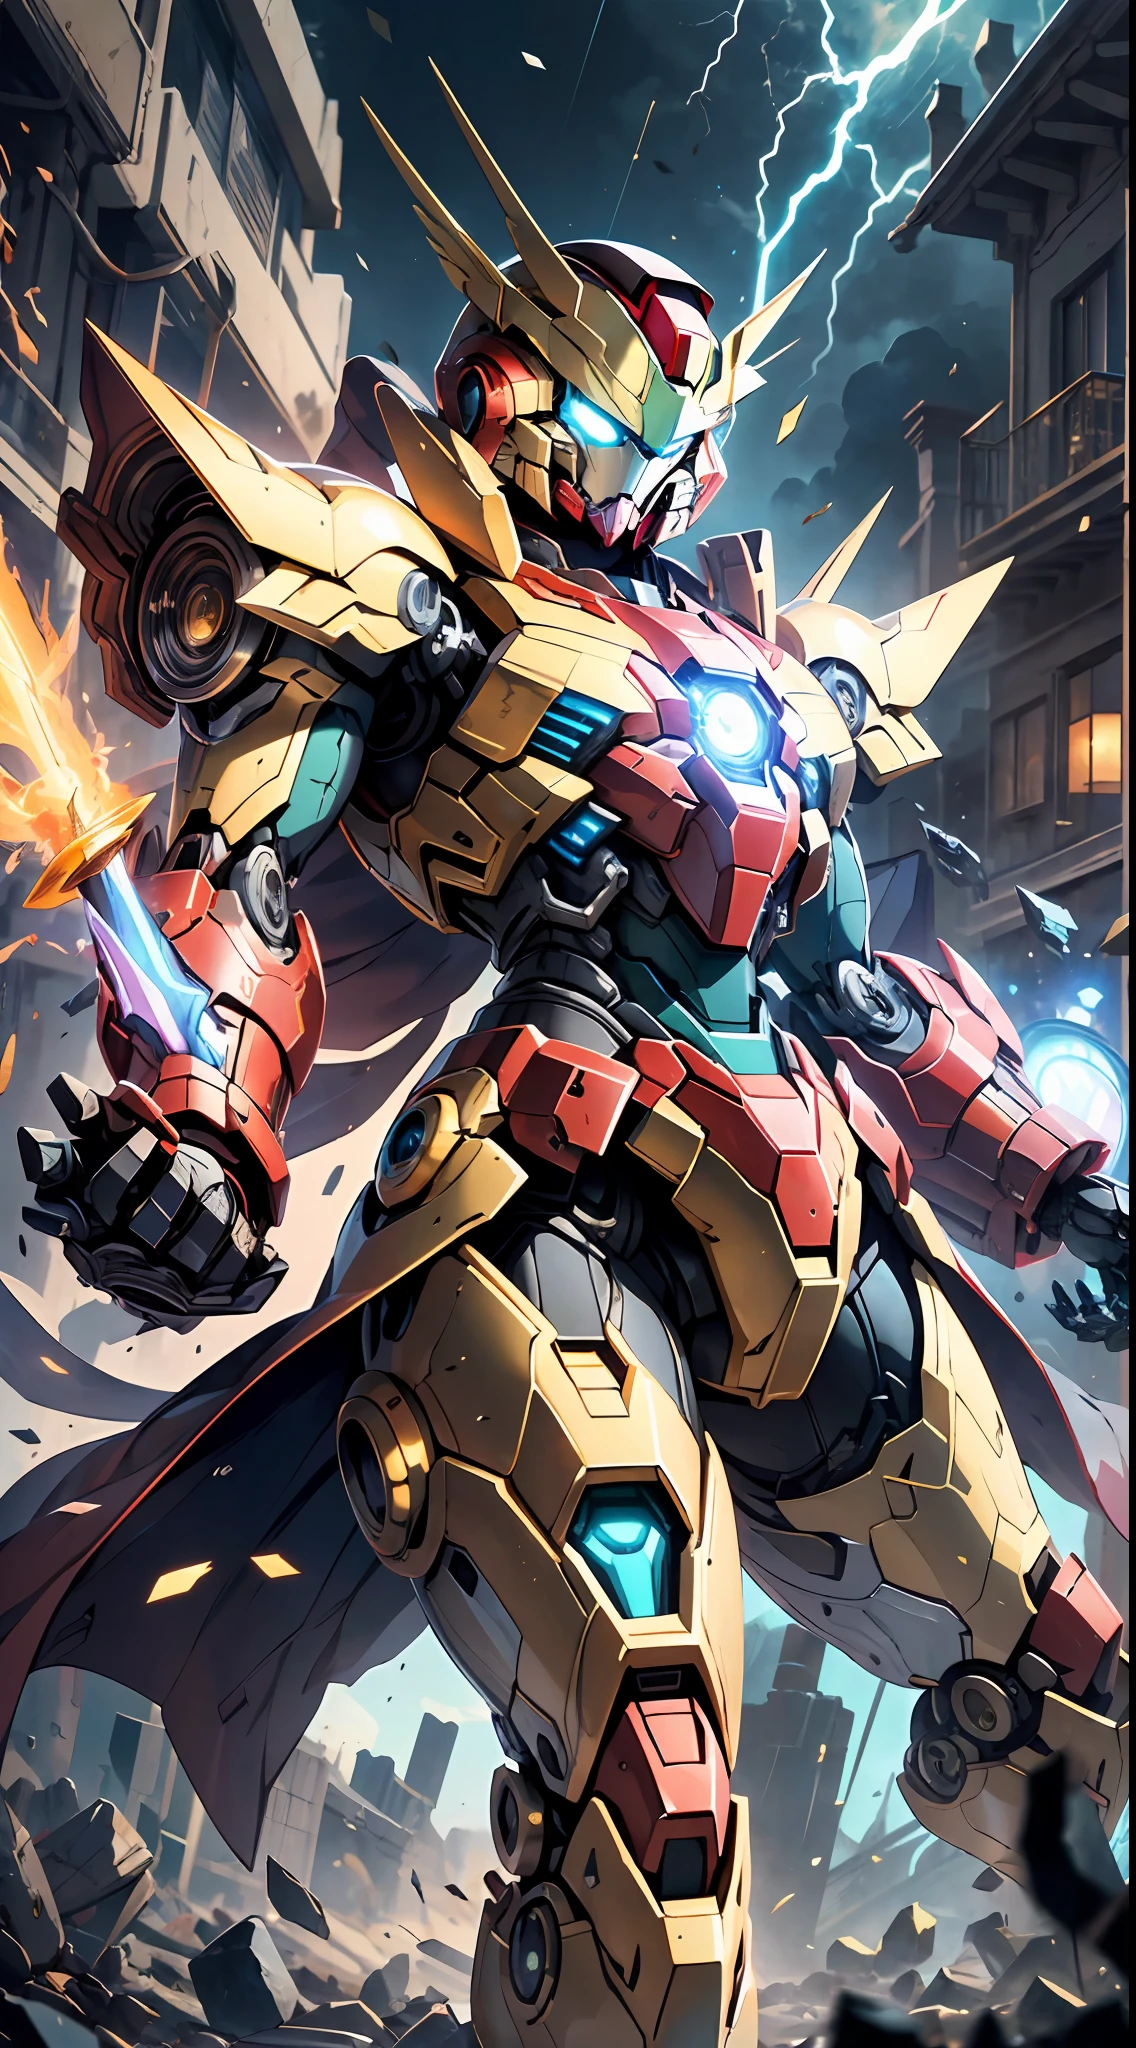 Golden Saint Seiya Limb armaduras, Couraça do Homem de Ferro do filme Marvel, (Gundam 00 Gundam Exia: 1.5), (mecha) (mechanical) (armaduras), (perna aberta: 1.3), Mecha Quebrado, (ângulo amplo), (fundo preto: 1.6), melhor qualidade, Obra de arte, estilo ciberpunk, Gundam Face, espada brilhante na mão, manto vermelho, super resolução, (Realidade: 1.4), 1 menino, ombros largos, Olhos frios, detalhes malucos, estilo de motor irrealista, Efeito Boca, Lente estilo David La Chapelle, Paleta de cores bioluminescentes: azul claro, ouro escuro, Branco brilhante, preto brilhante, ângulo amplo, super bem, natureza morta cinematográfica, vibrante, estilo sakimichan, olhos perfeitos, A mais alta qualidade de imagem 8K, inspirado em Harry Winston, Obra-prima de fotografia Canon EOS R 6 "Caos 50,--, ( sob a toupeira do olho), rastreamento de raios, surrealismo, pele texturizada, brilho metálico, olhando para o espectador, noite de trovões e relâmpagos, efeitos de partículas, composição perfeita,